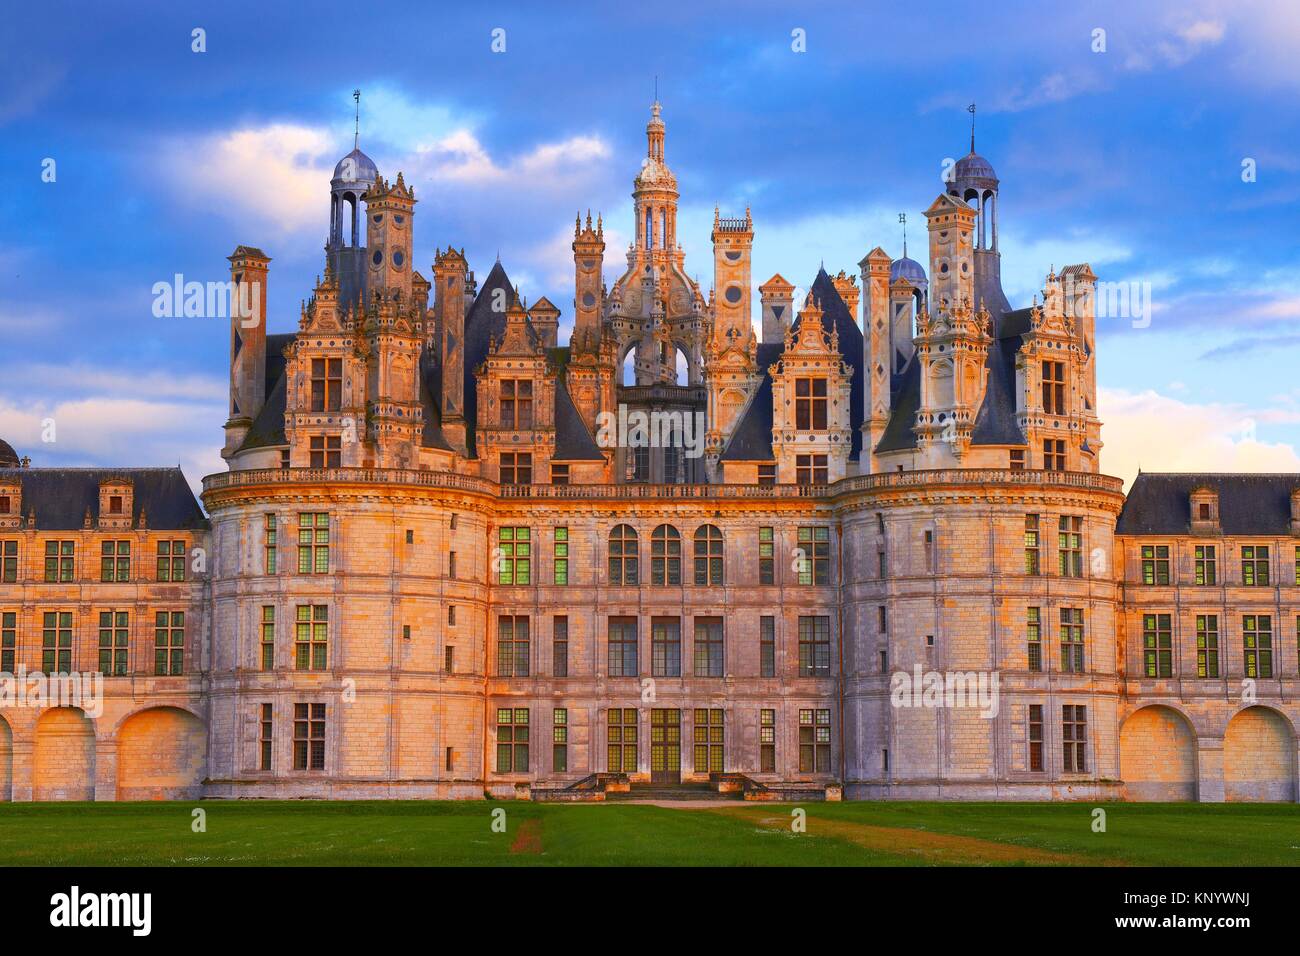 Chambord, Chambord Castle, Chateau de Chambord, Sunset, Loir et Cher, Loire Valley, Loire River, Val de Loire, UNESCO World Heritage Site, France. Stock Photo